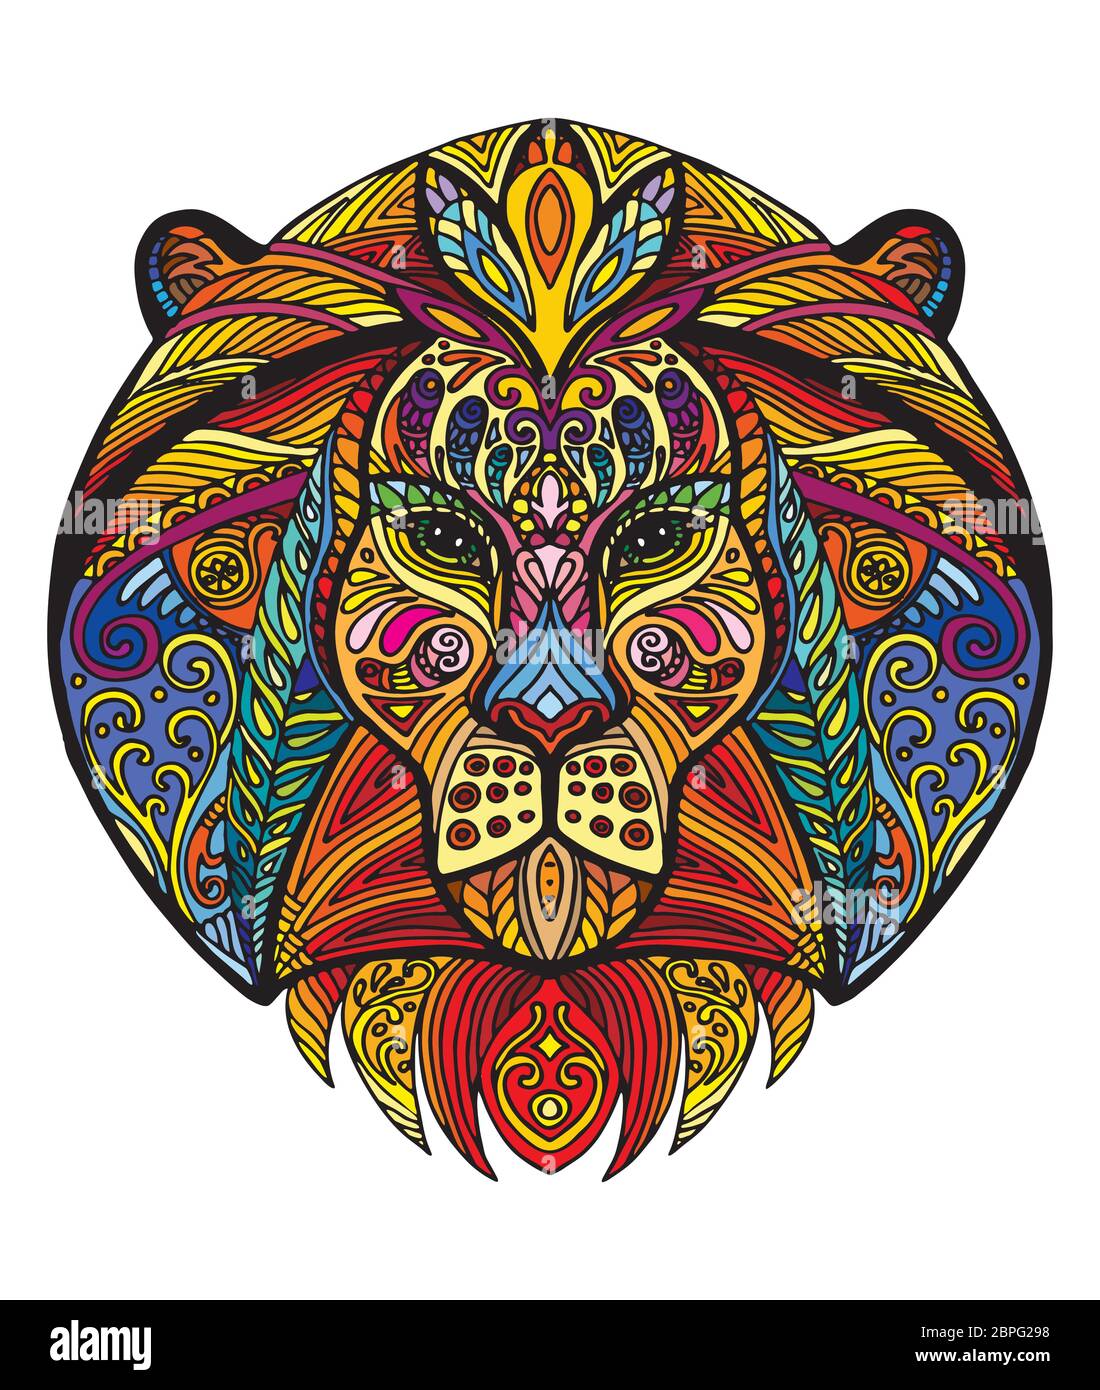 Vettore decorativo doodle testa ornamentale del leone. Vettore astratto colorato illustrazione della testa del leone isolato su sfondo bianco. Illustrazione del magazzino Illustrazione Vettoriale